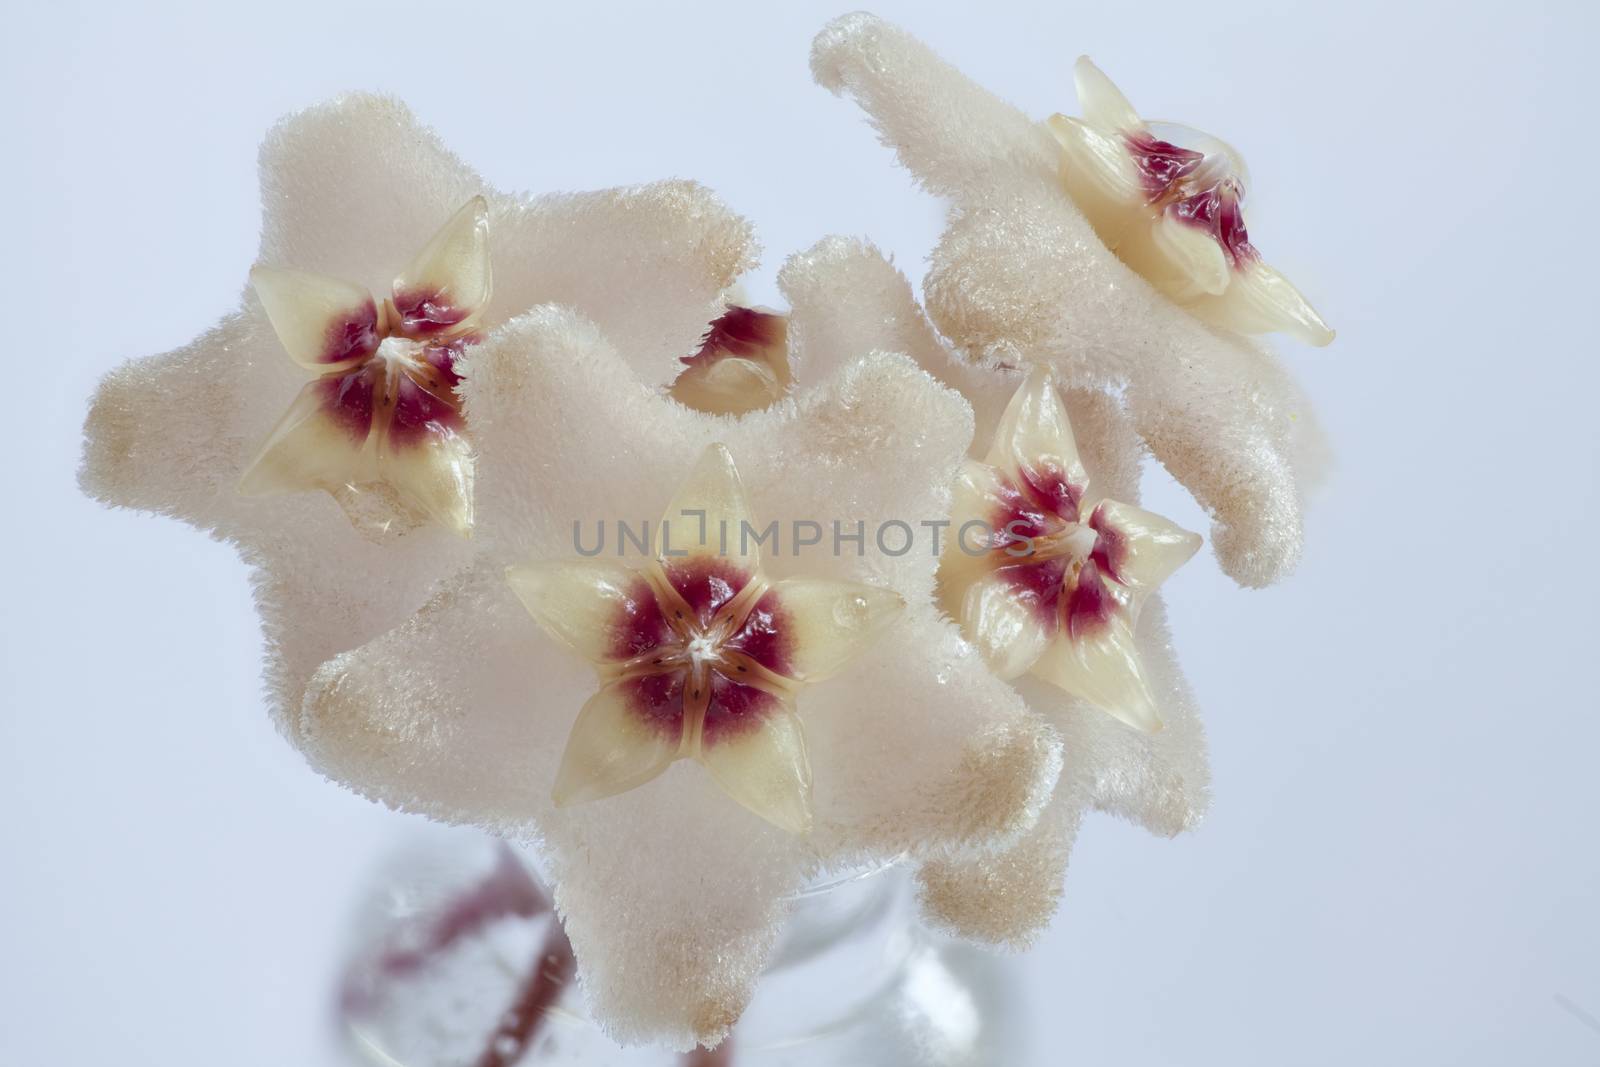 Nectar on Hoya flowers white background macro shot